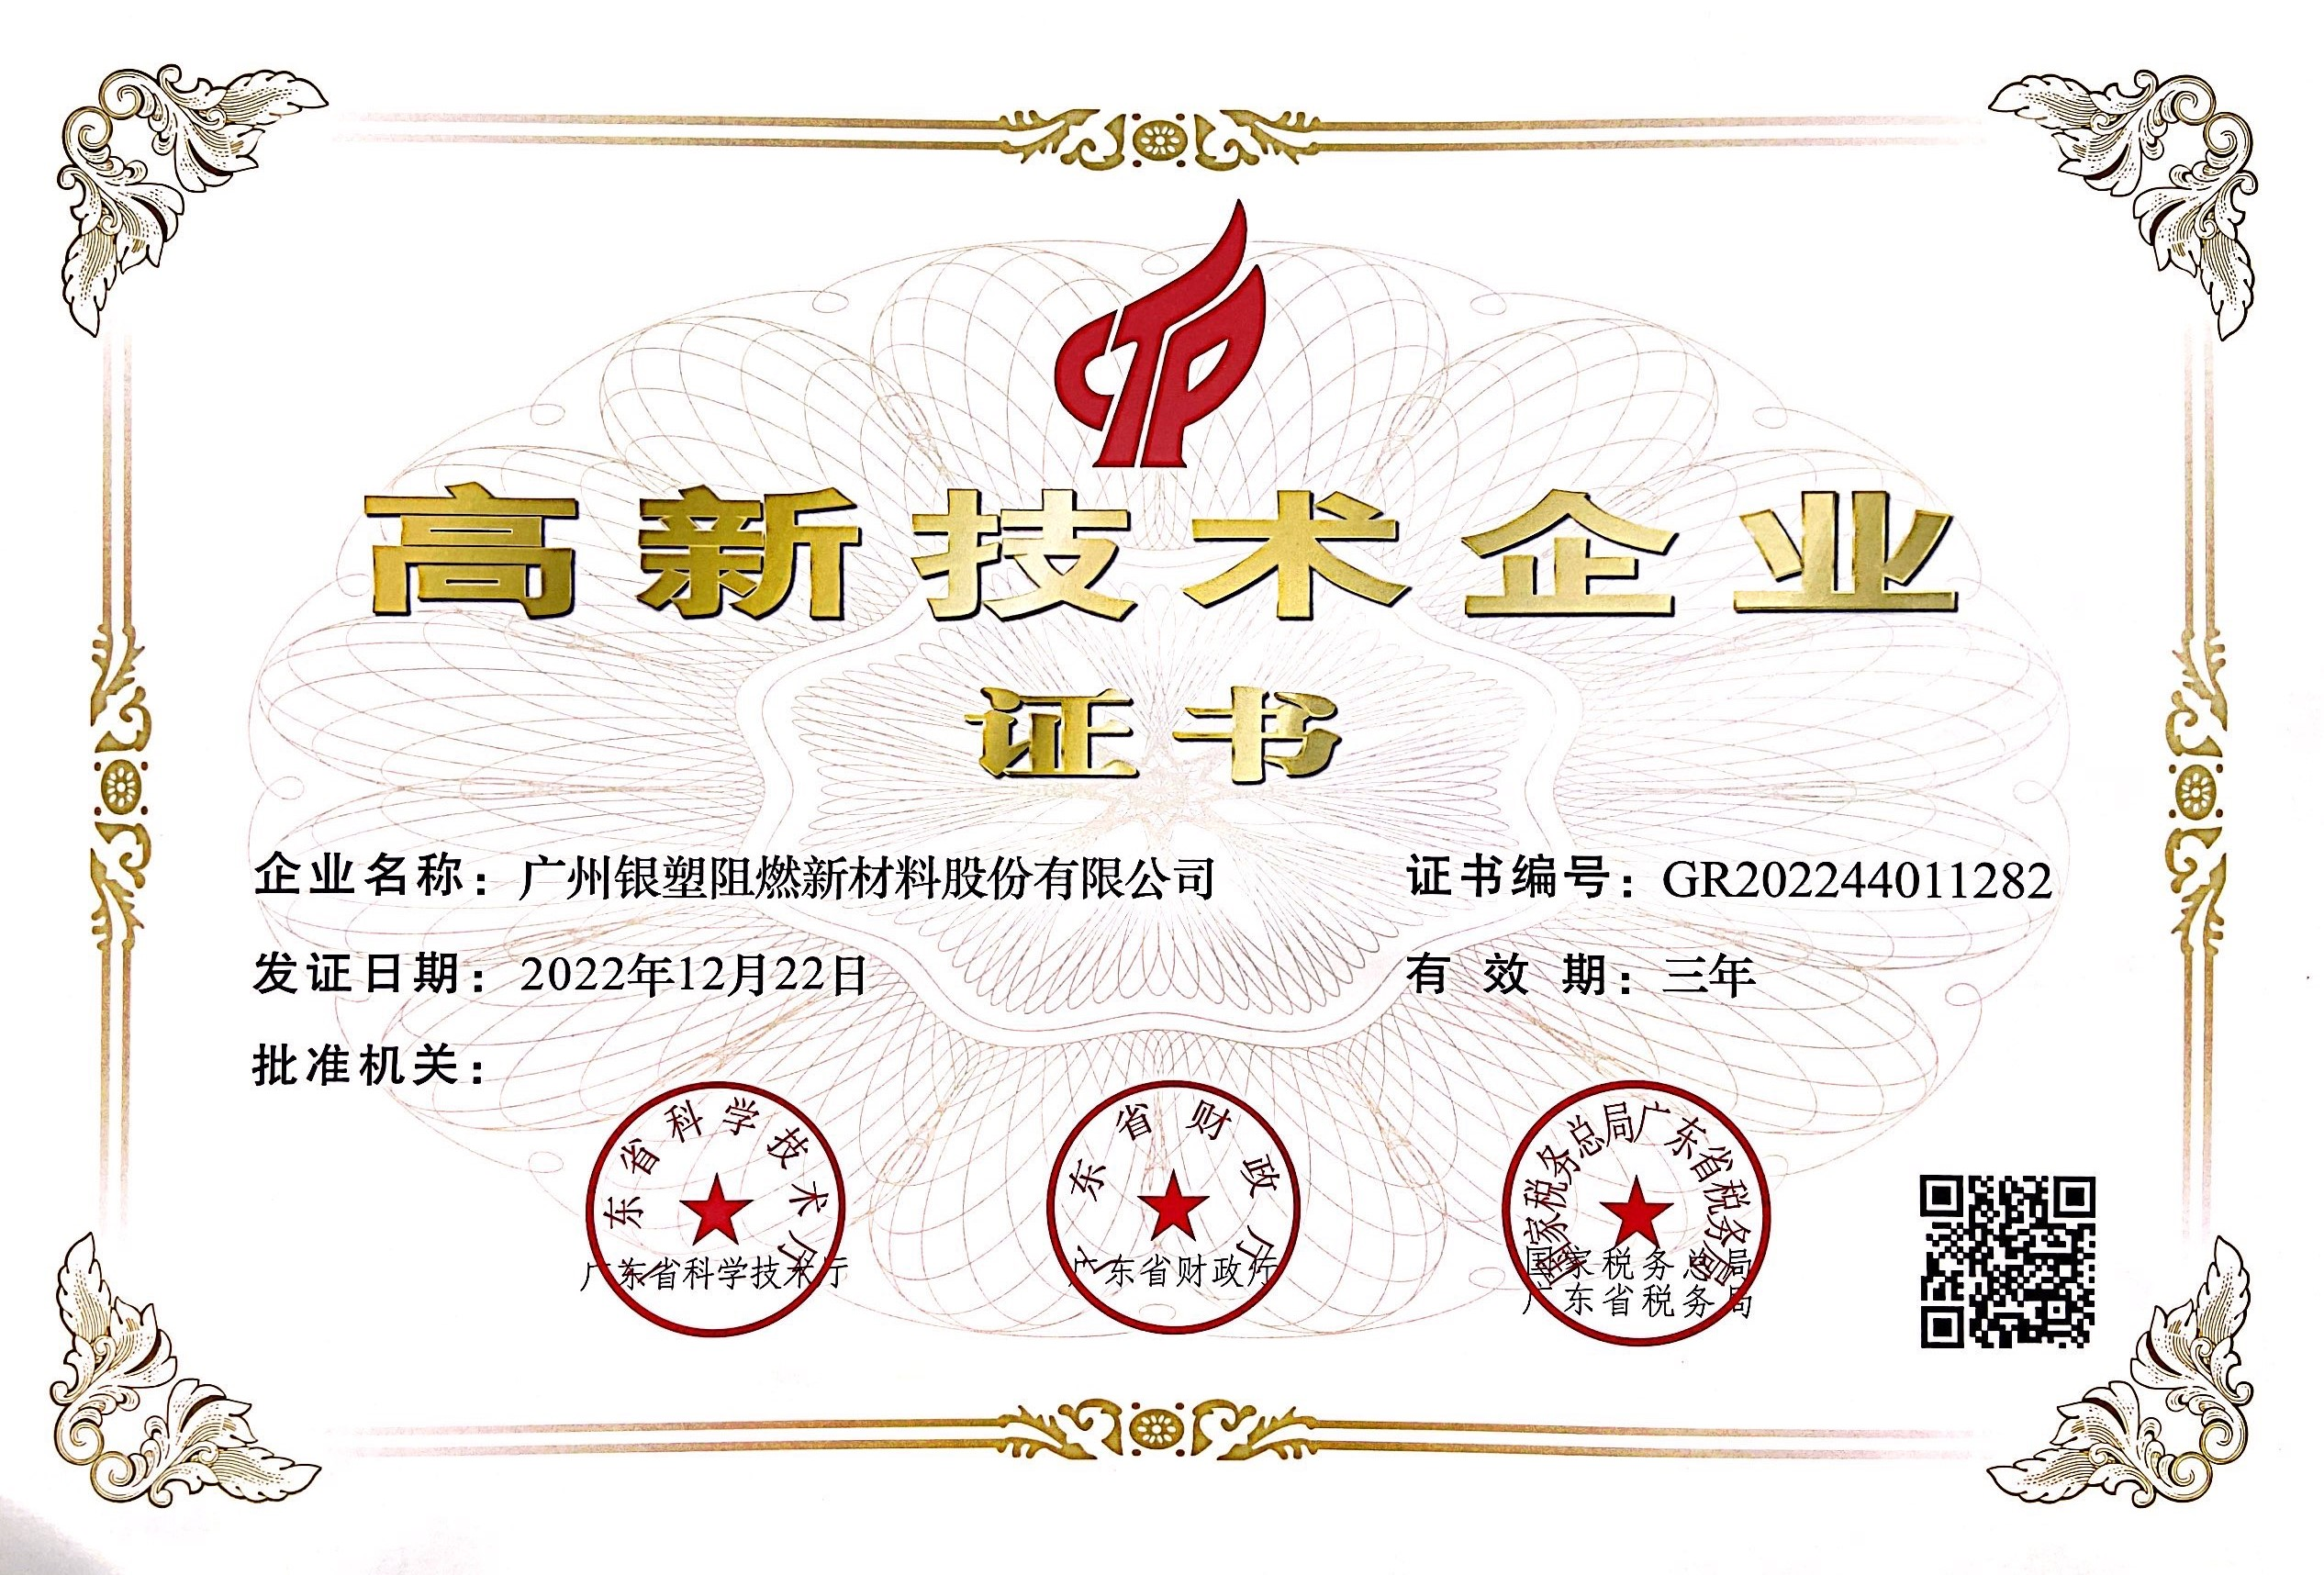 أخبار جيدة - حصلت Yinsu Flame Retardant على لقب 'National High-tech Enterprise ' مرة أخرى